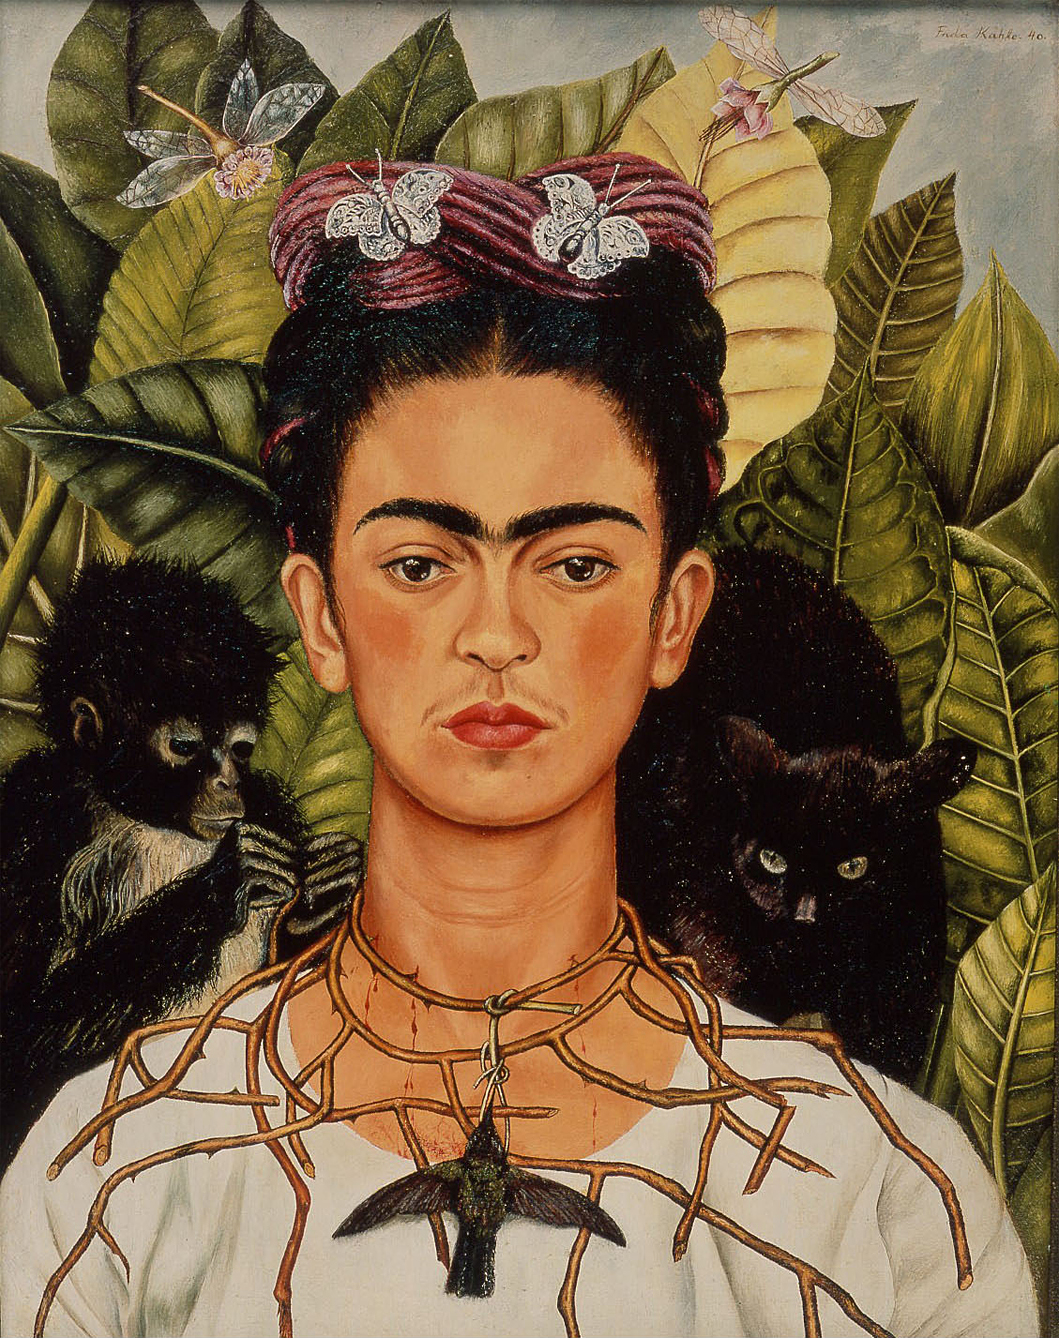 戴荊棘和蜂鳥項鍊的自畫像 by Frida Kahlo - 1940 - 63,5 x 49,5 釐米 